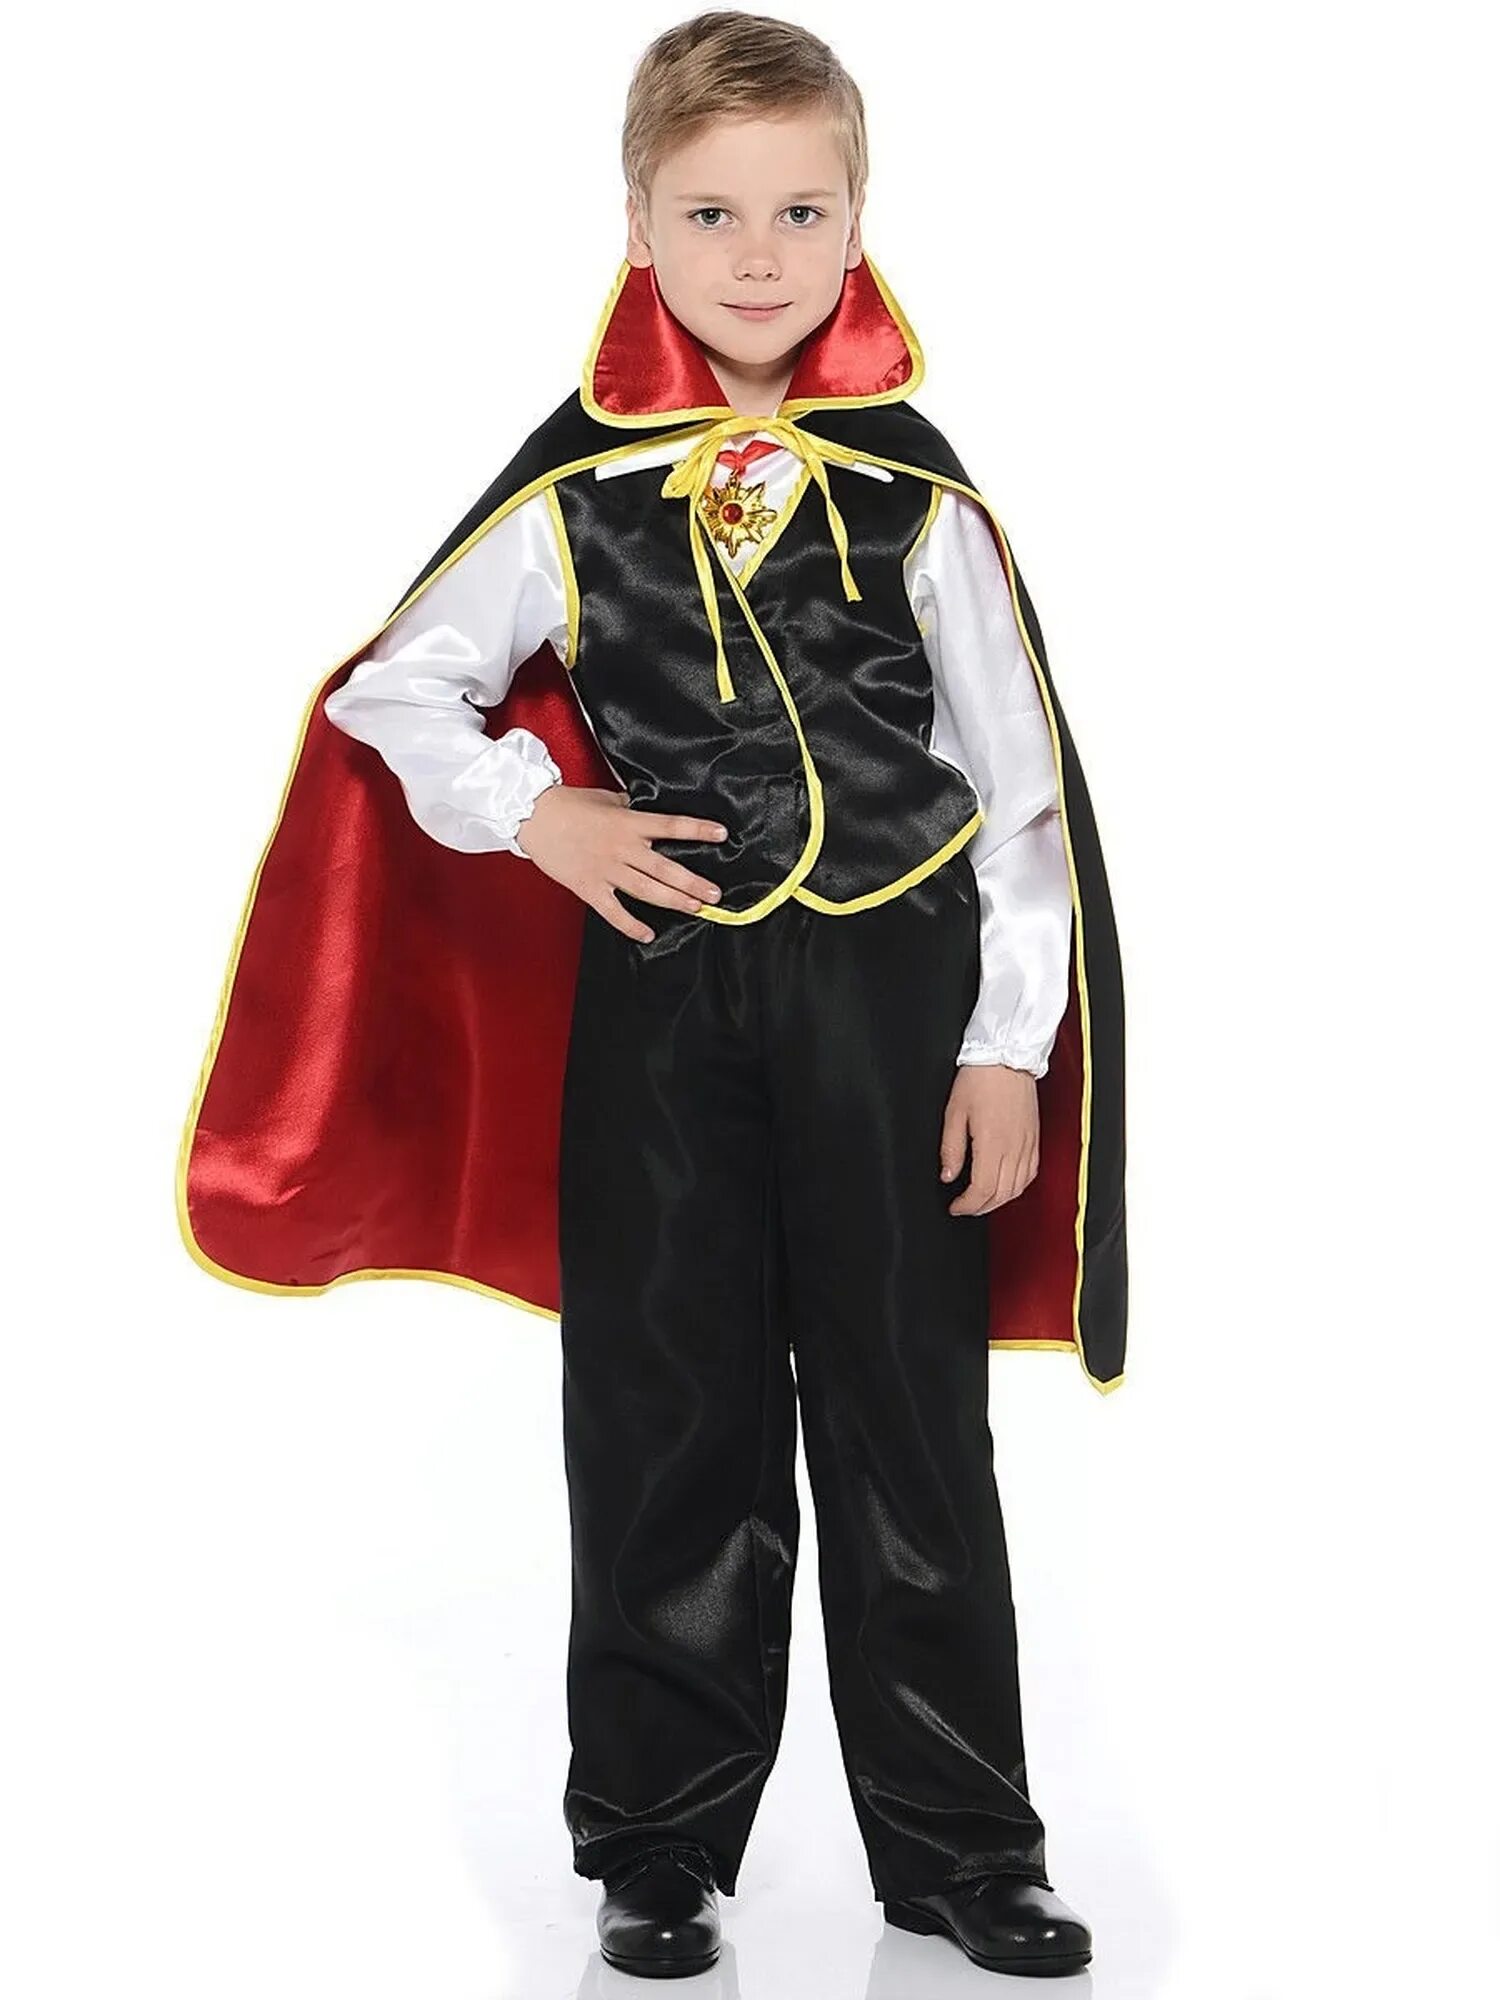 Нового костюмы для детей. Карнавальный костюм Дракула батик. Карнавальный костюм Дракула красный батик. Батик костюм Дракула для мальчика. Костюм Дракулы детский 122-128.